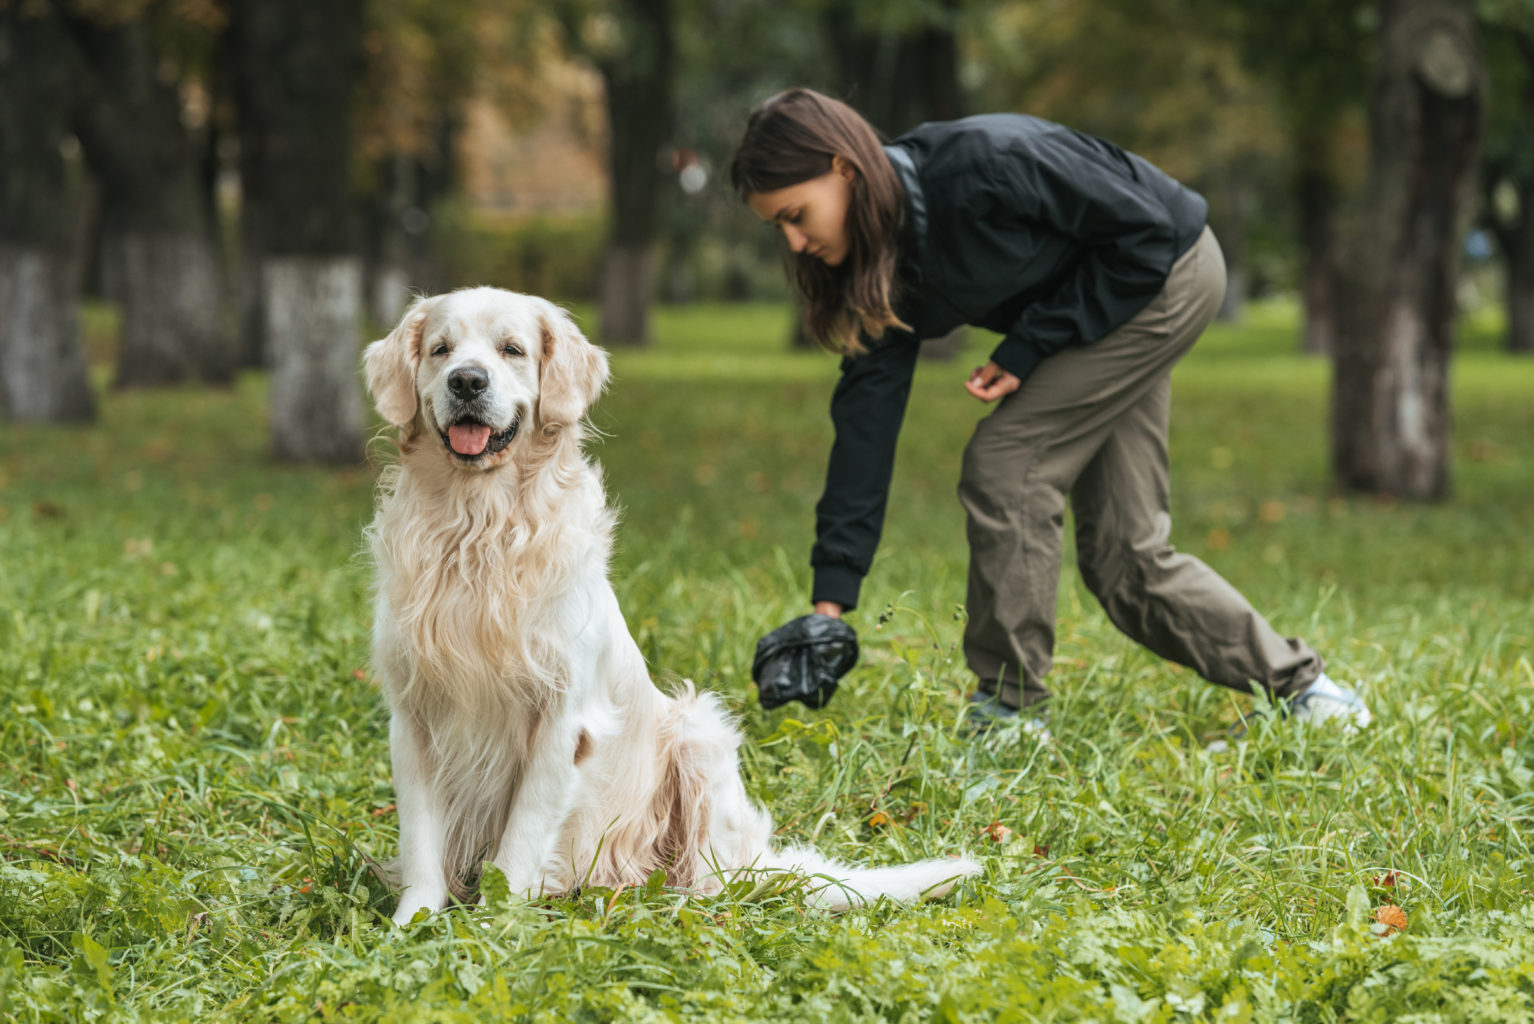 Mujer joven limpiando a un perro Golden Retriever en un parque.